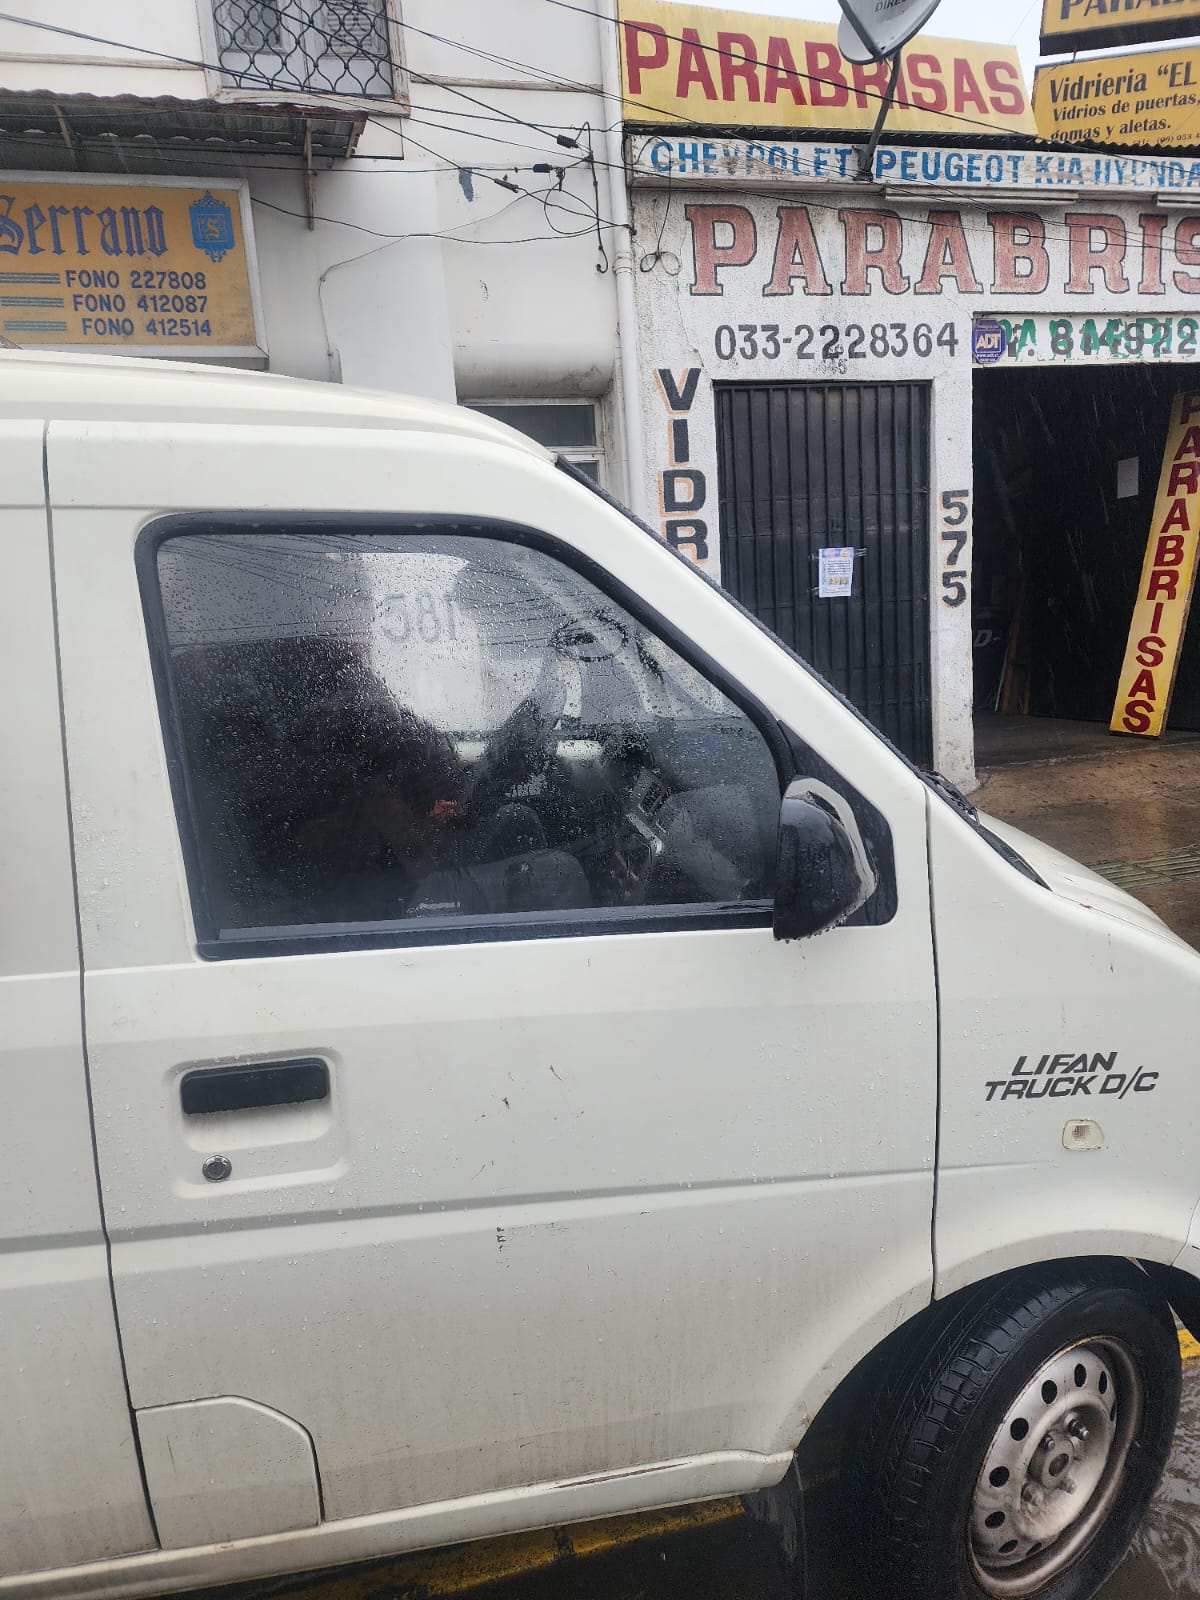 Empresa pagó vidrio roto a vecino de Hijuelas que le robaron desde furgón en La Calera